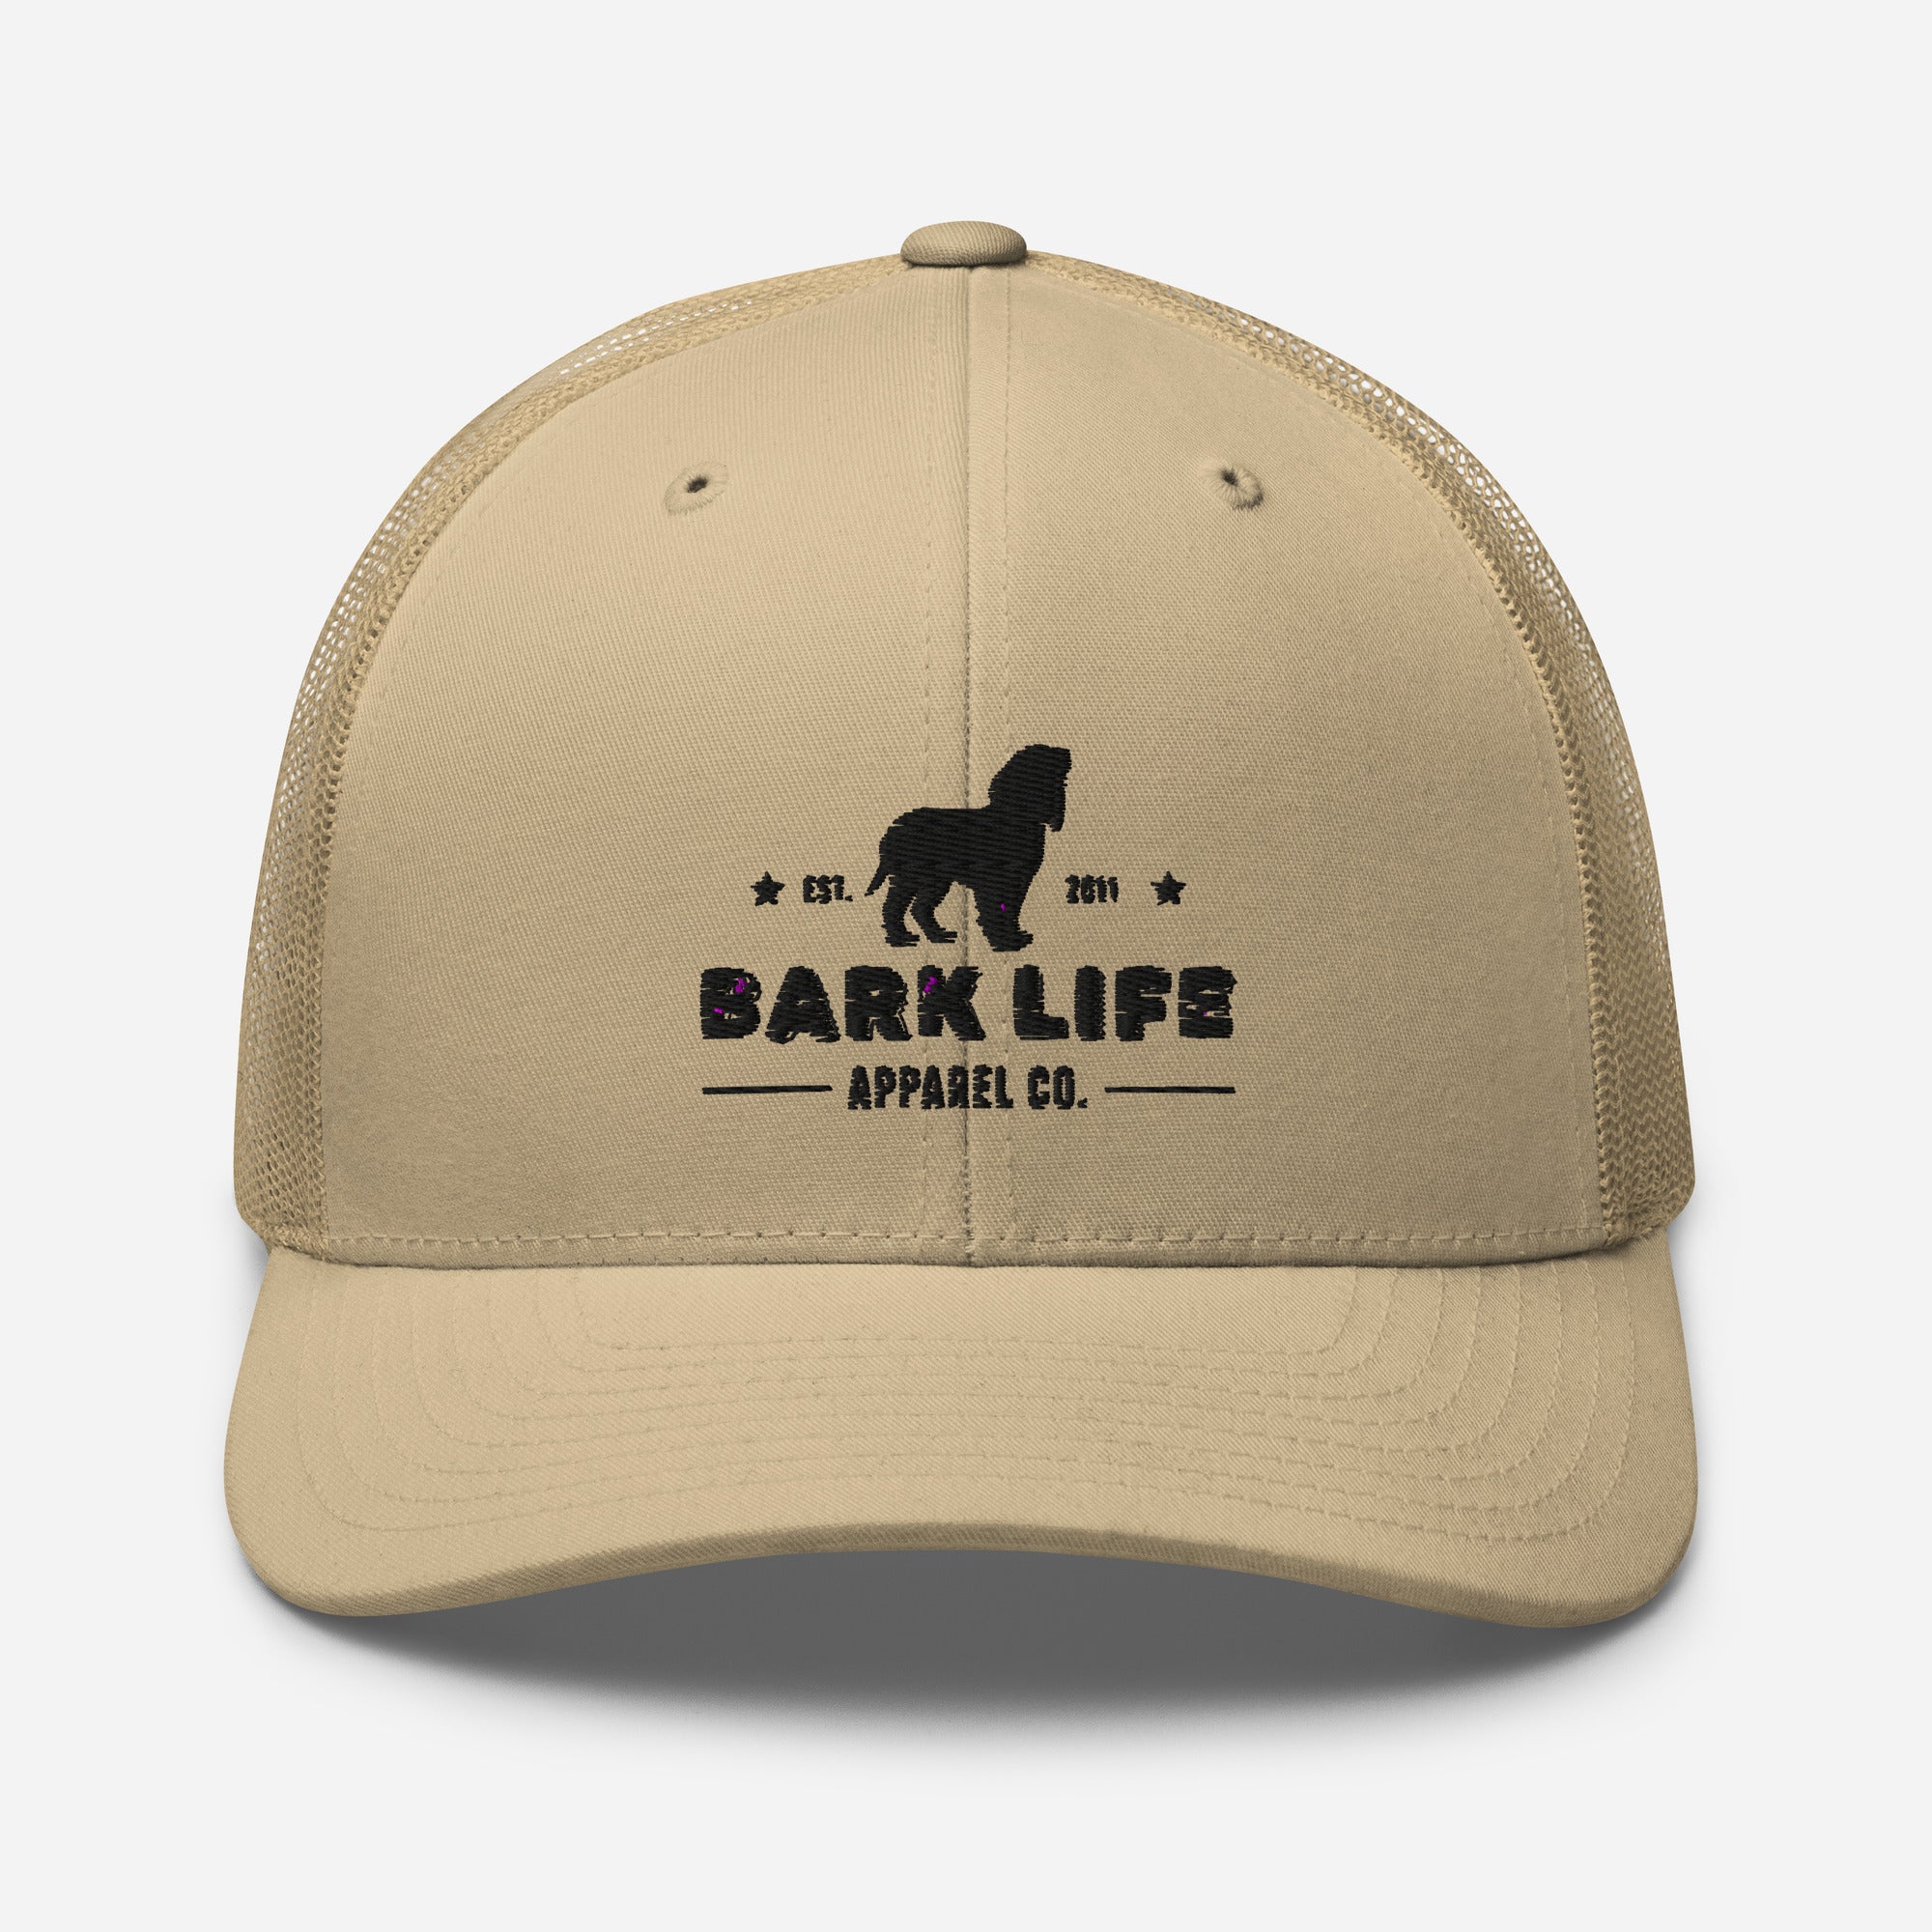 Boykin Spaniel - Hat